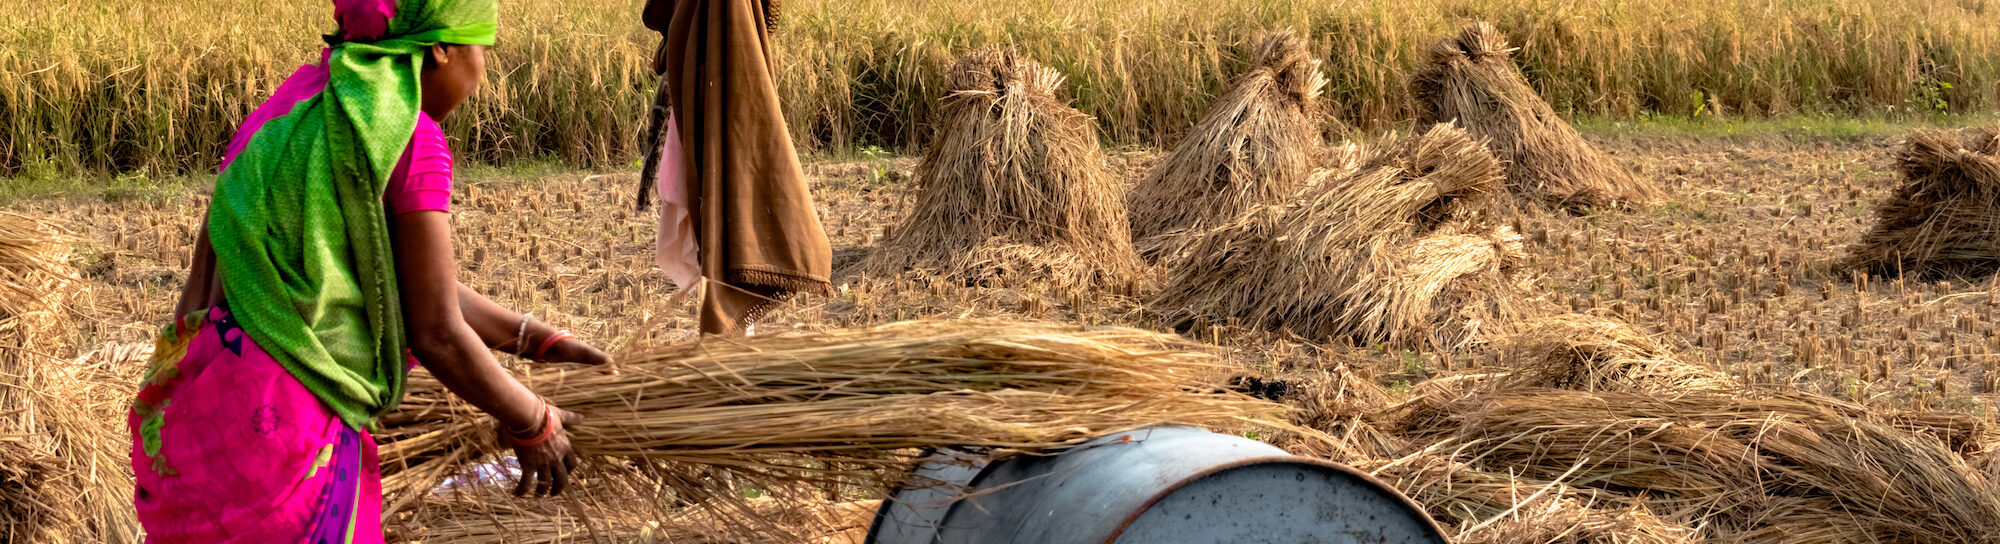 Weizenproduktion: Hitzewelle in Indien verschärft weltweite Versorgungslage